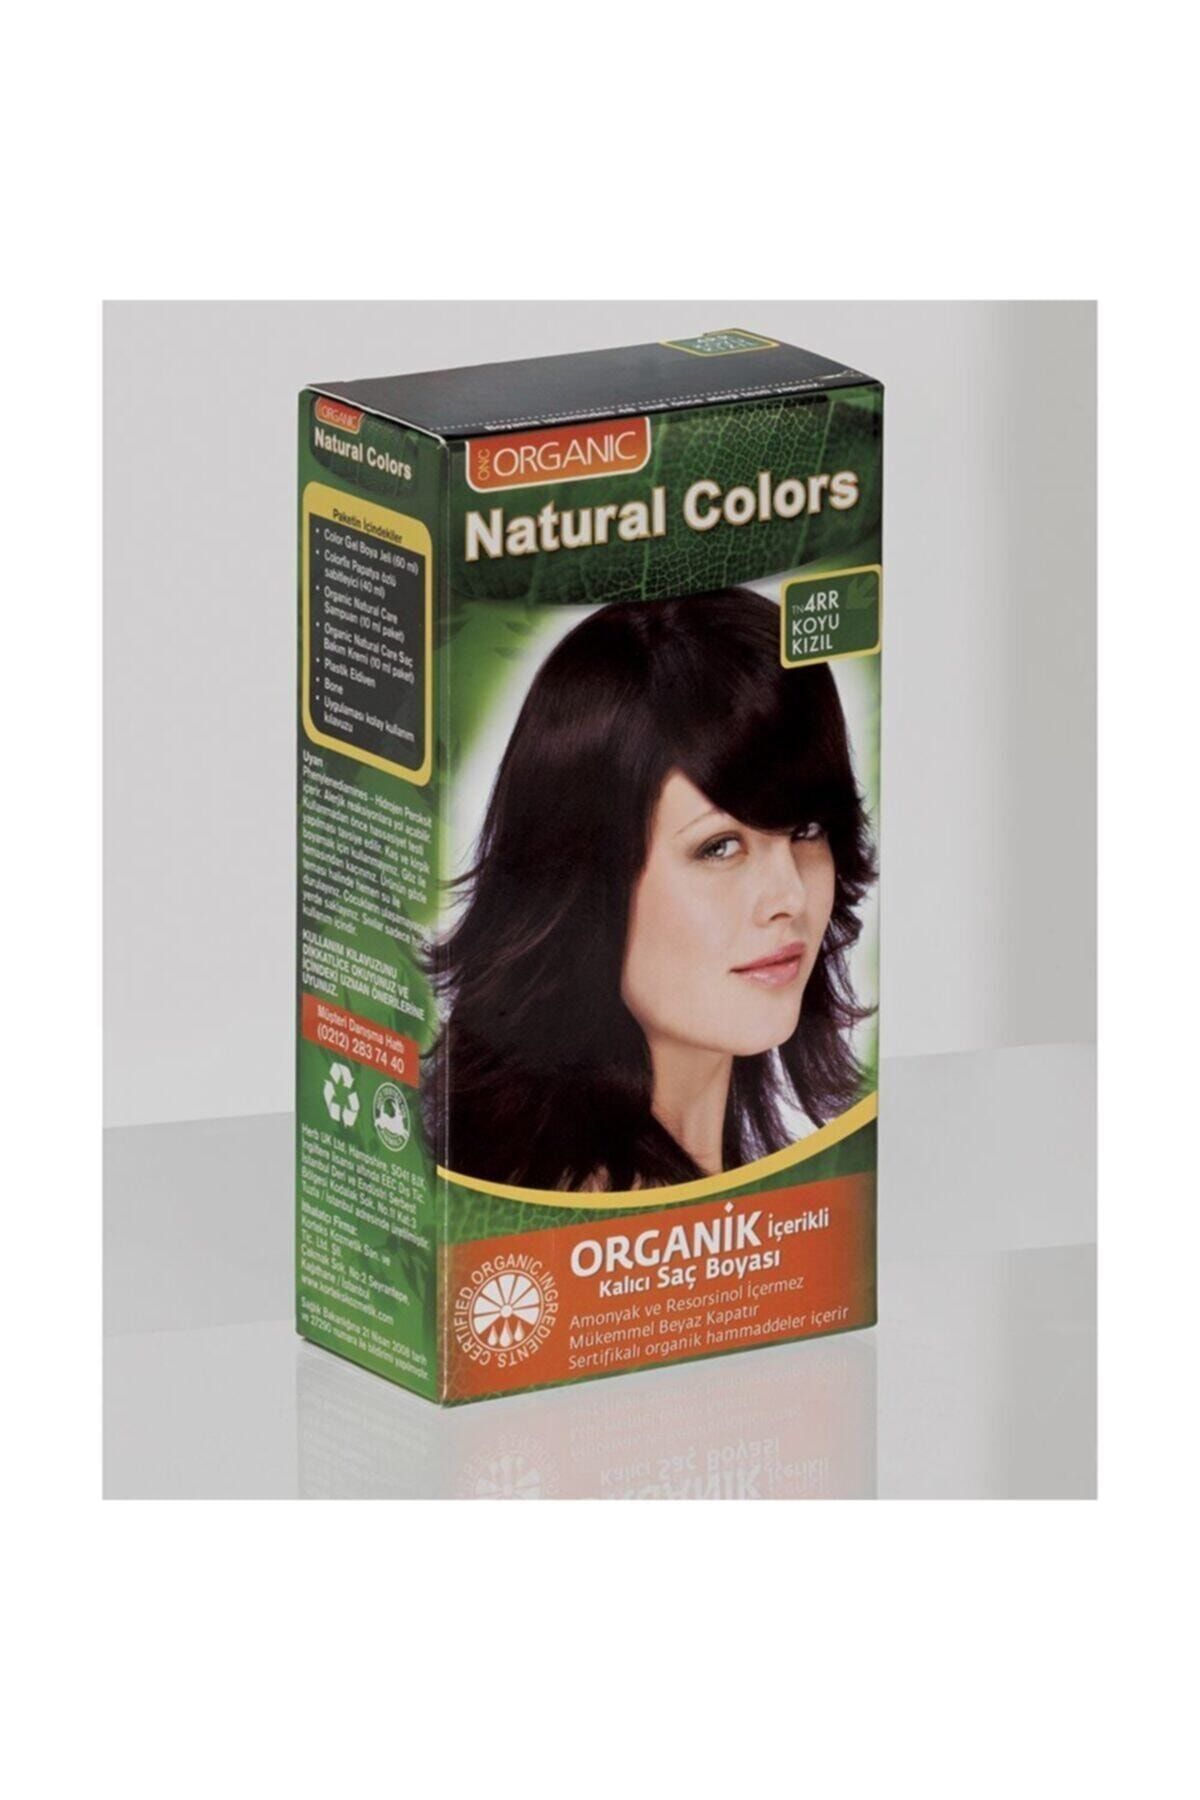 Organic Natural Colors Natural Colors 4rr Koyu Kızıl Organik Saç Boyası